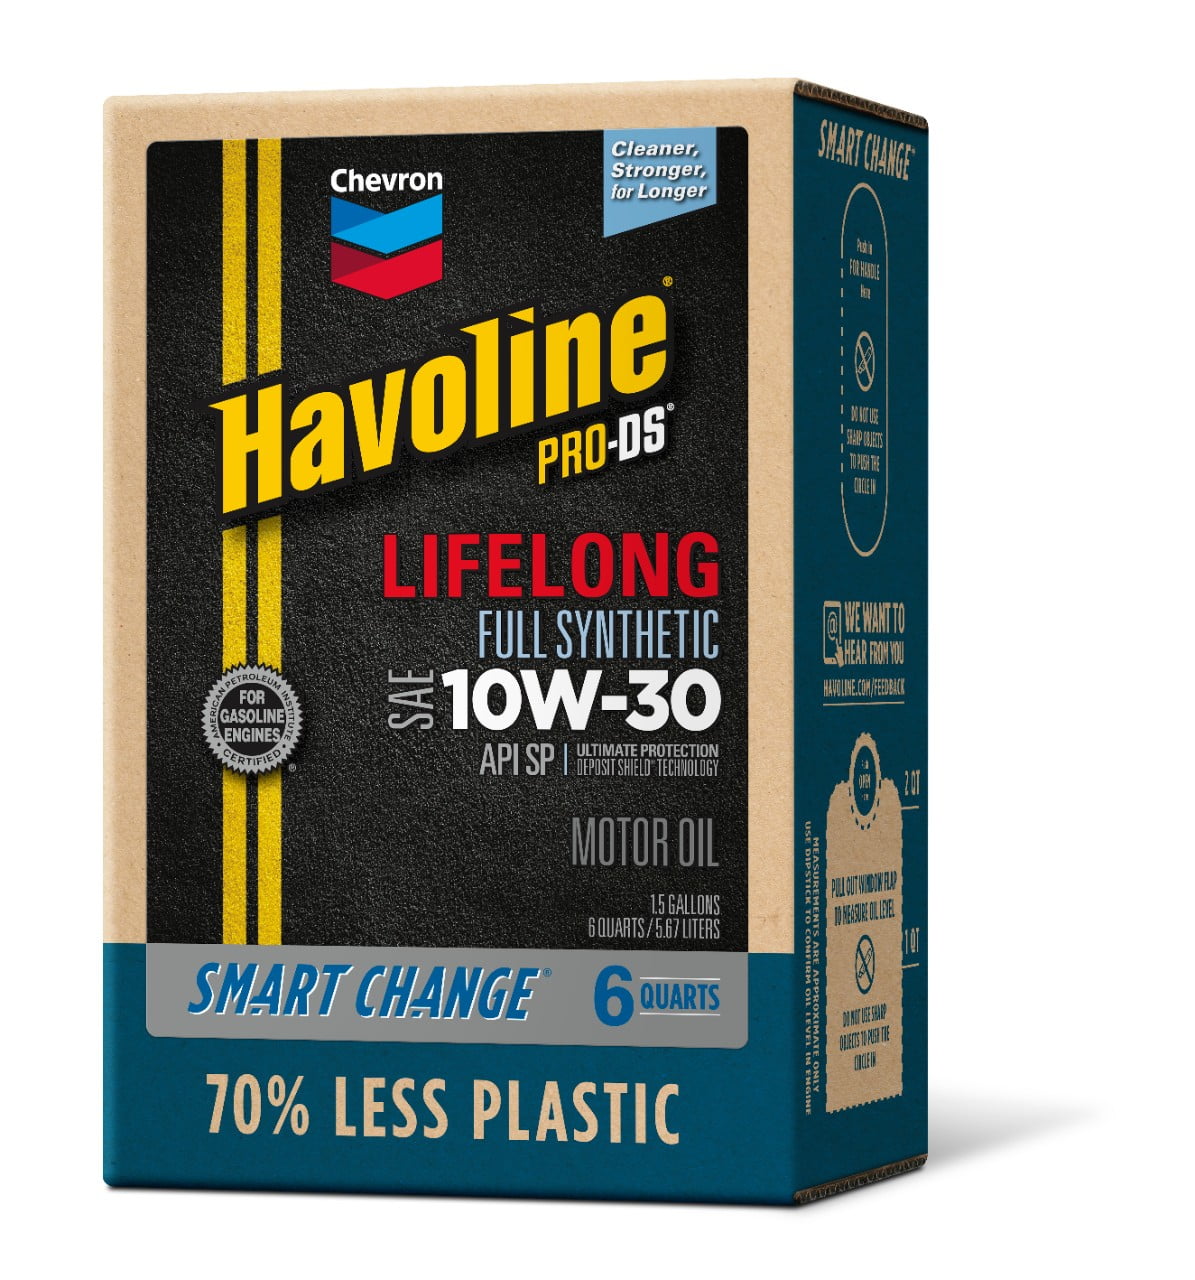 Chevron Havoline Lifelong Full Synthetic Motor Oil, 10W-30, 6 Quart Smart Change Box